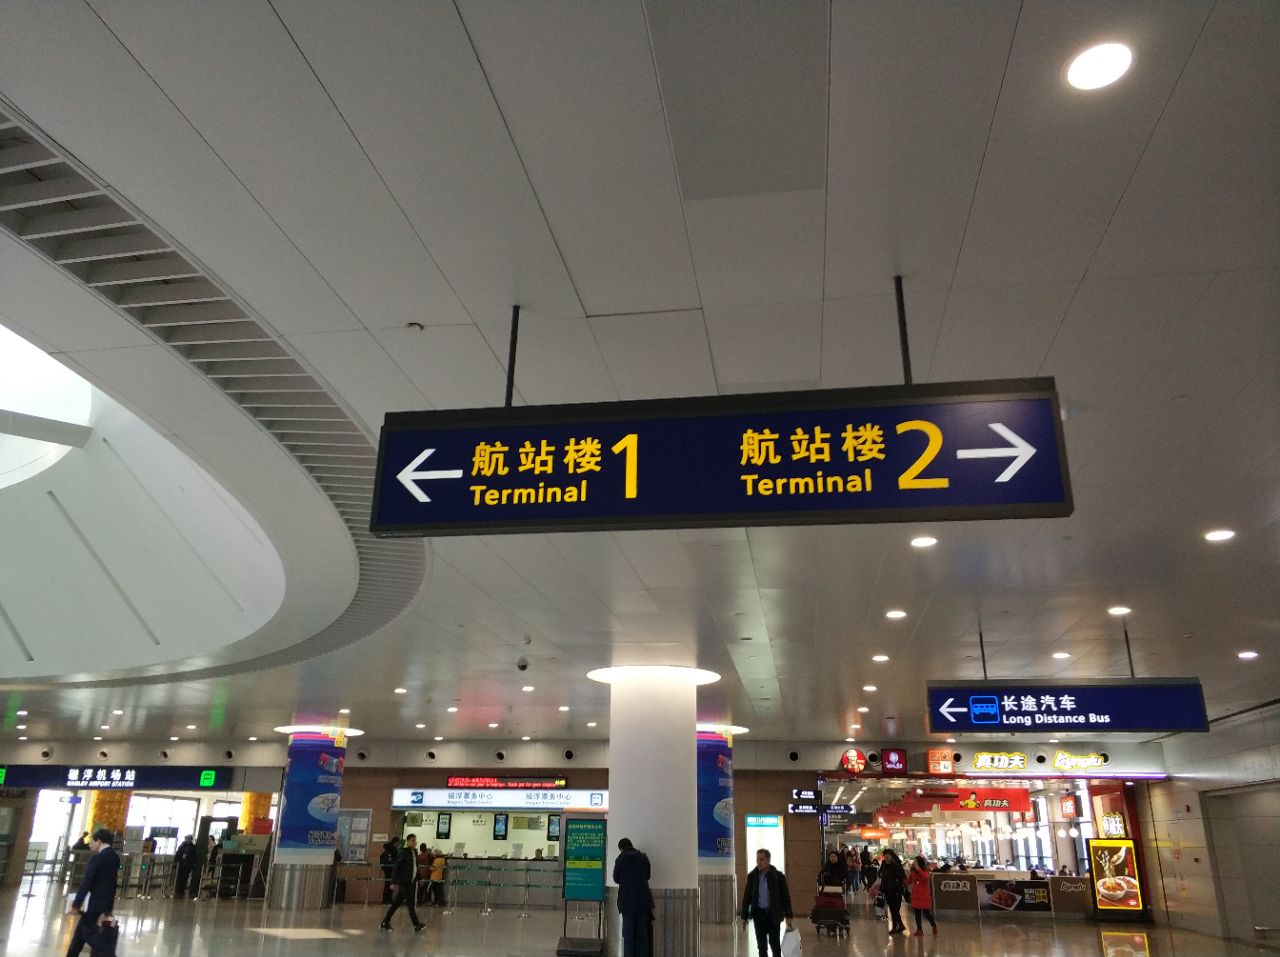 上海浦东国际机场是浦东的空港枢纽,有t1和t2两个航站楼,每天有很多